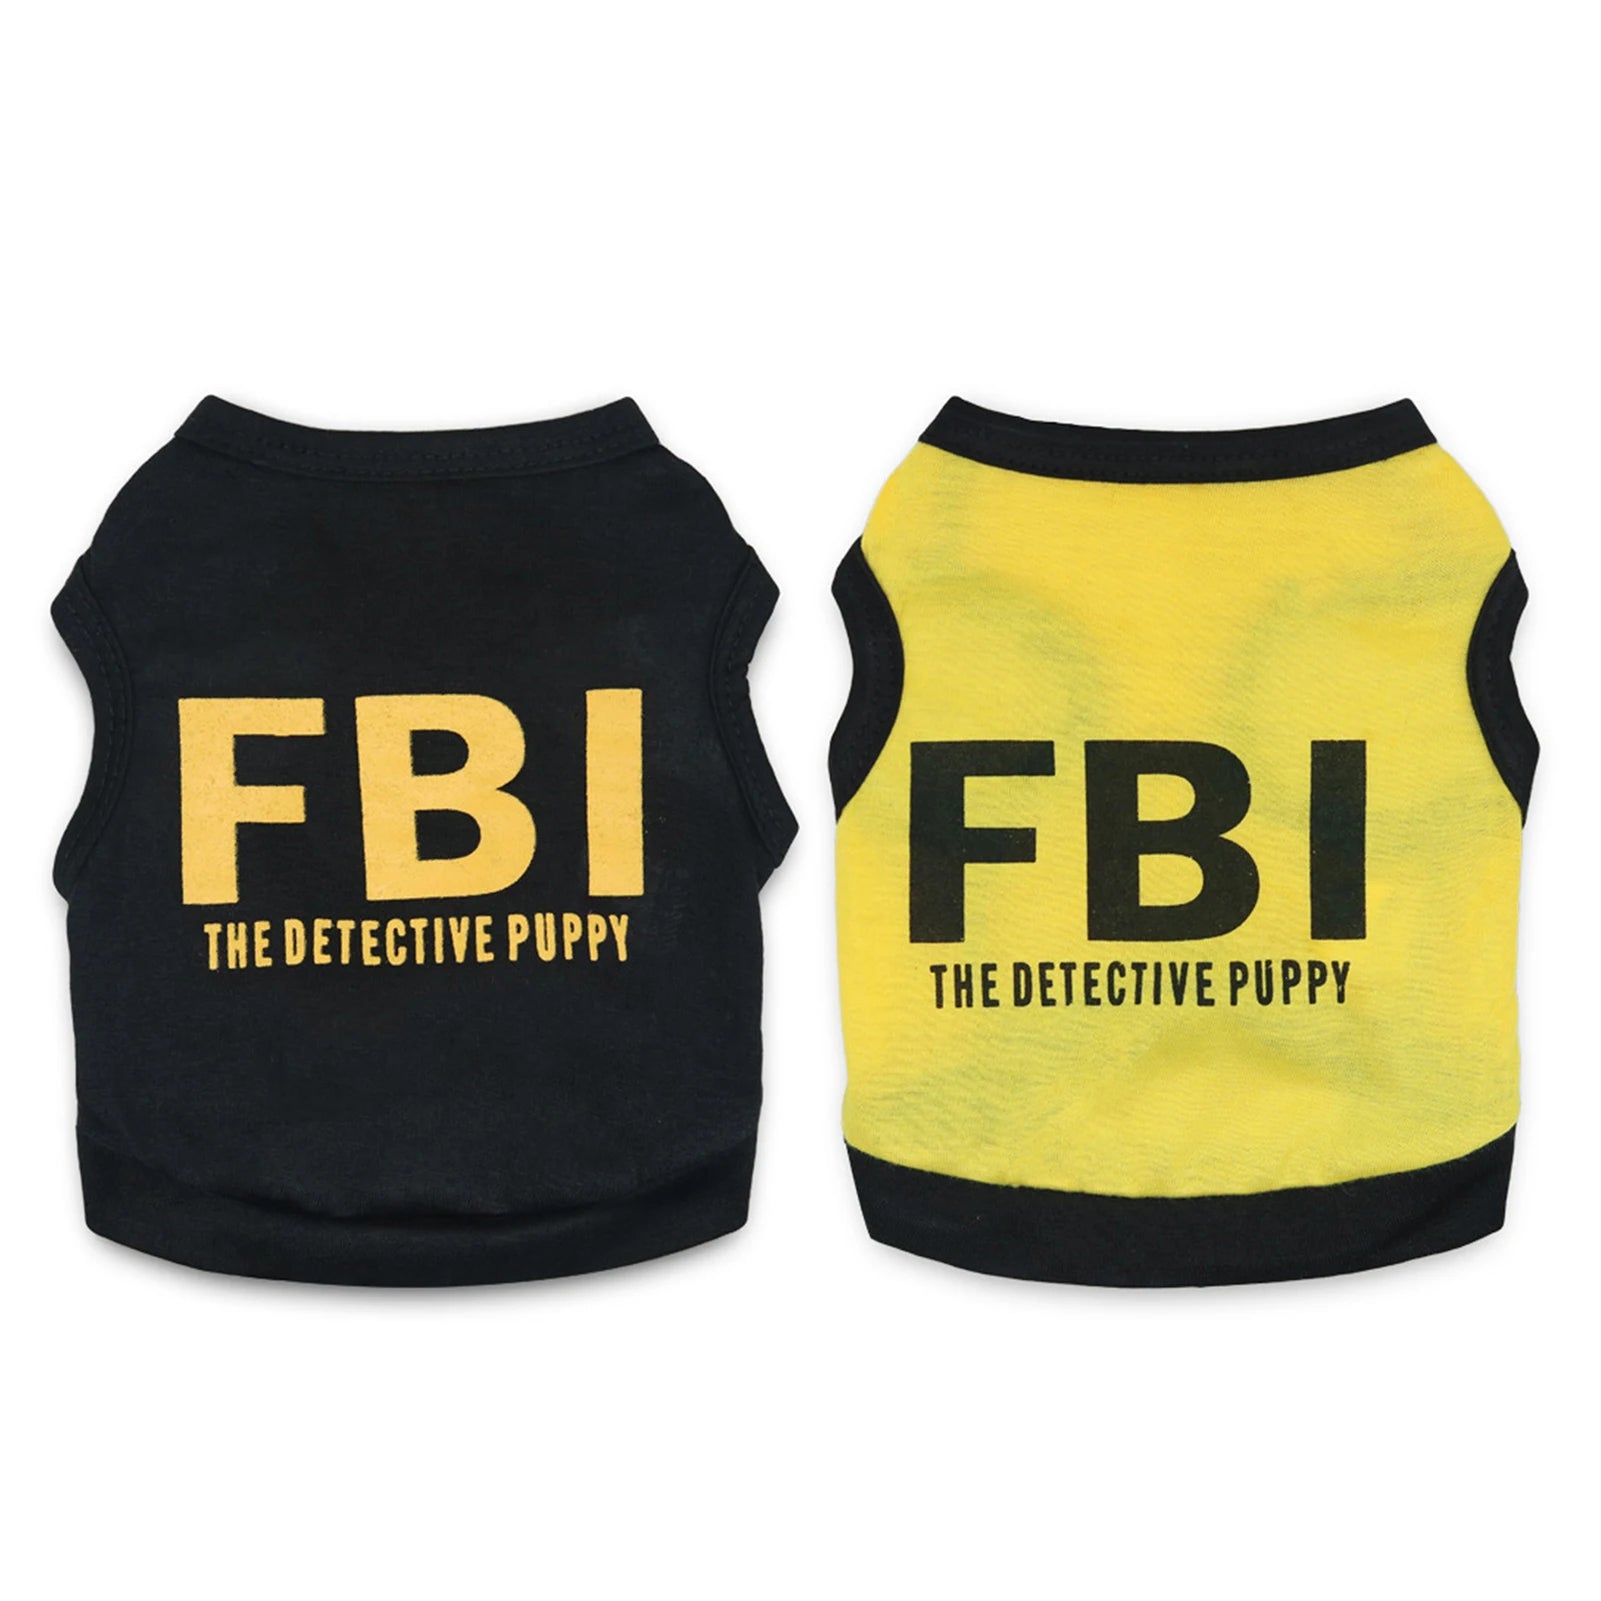 FBI dog vest